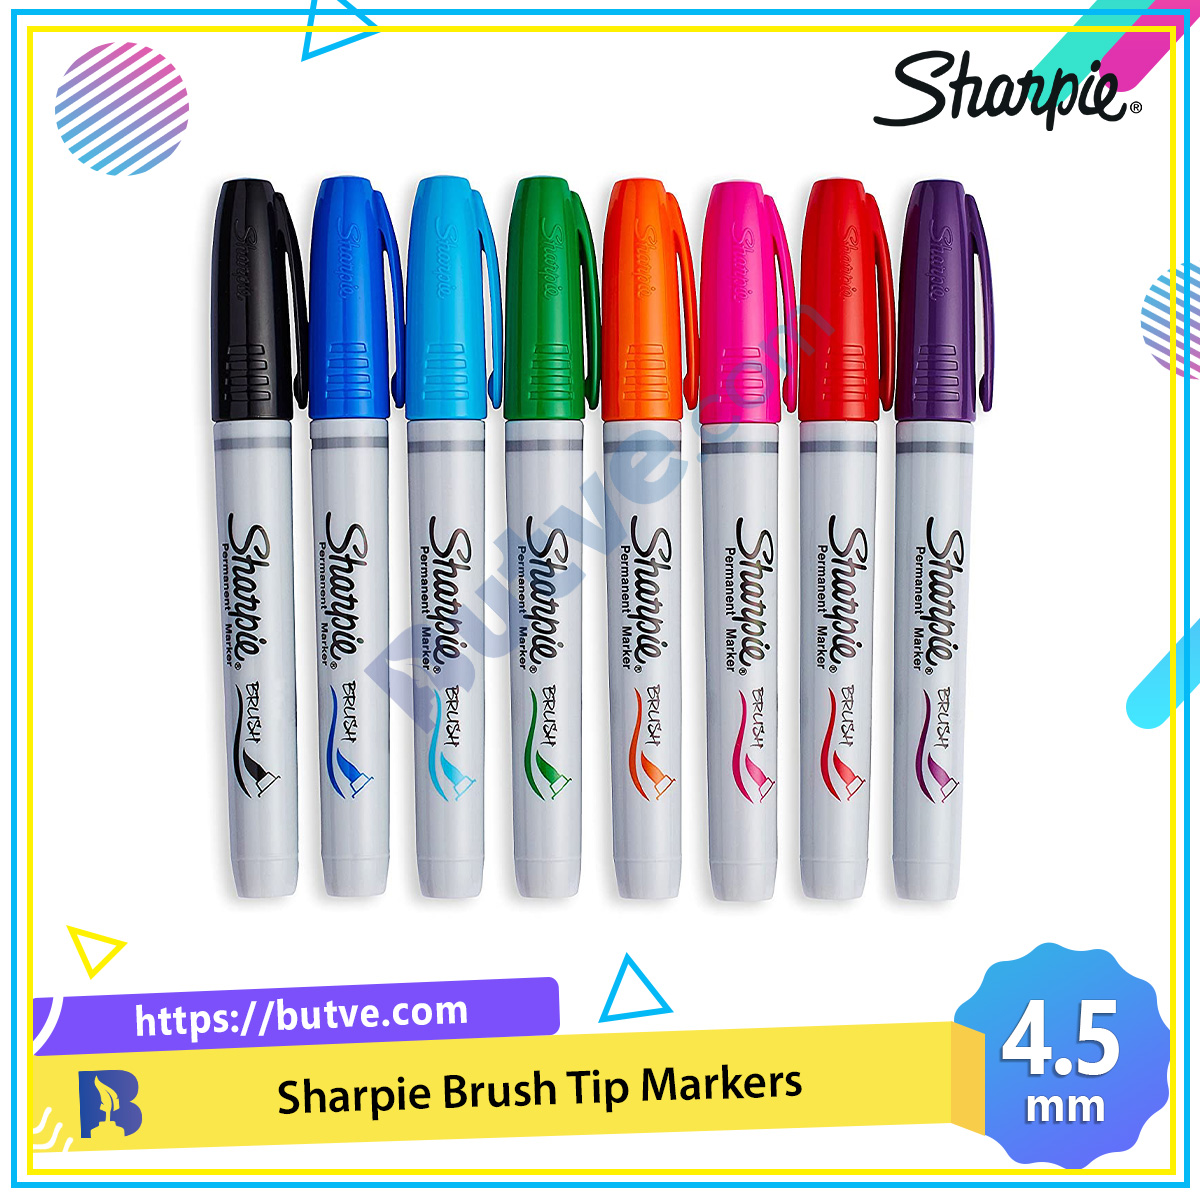 Bút lông dầu Sharpie Brush Tip: Với bút lông dầu Sharpie Brush Tip, bạn sẽ có thể tạo ra những bức tranh nghệ thuật đầy màu sắc và tinh tế. Với đầu bút dạng chổi, bạn có thể linh hoạt vẽ các đường nét mềm mại hay những chi tiết tinh tế nhất. Hãy đến với sản phẩm này và khám phá tài năng hội hoạ của mình.